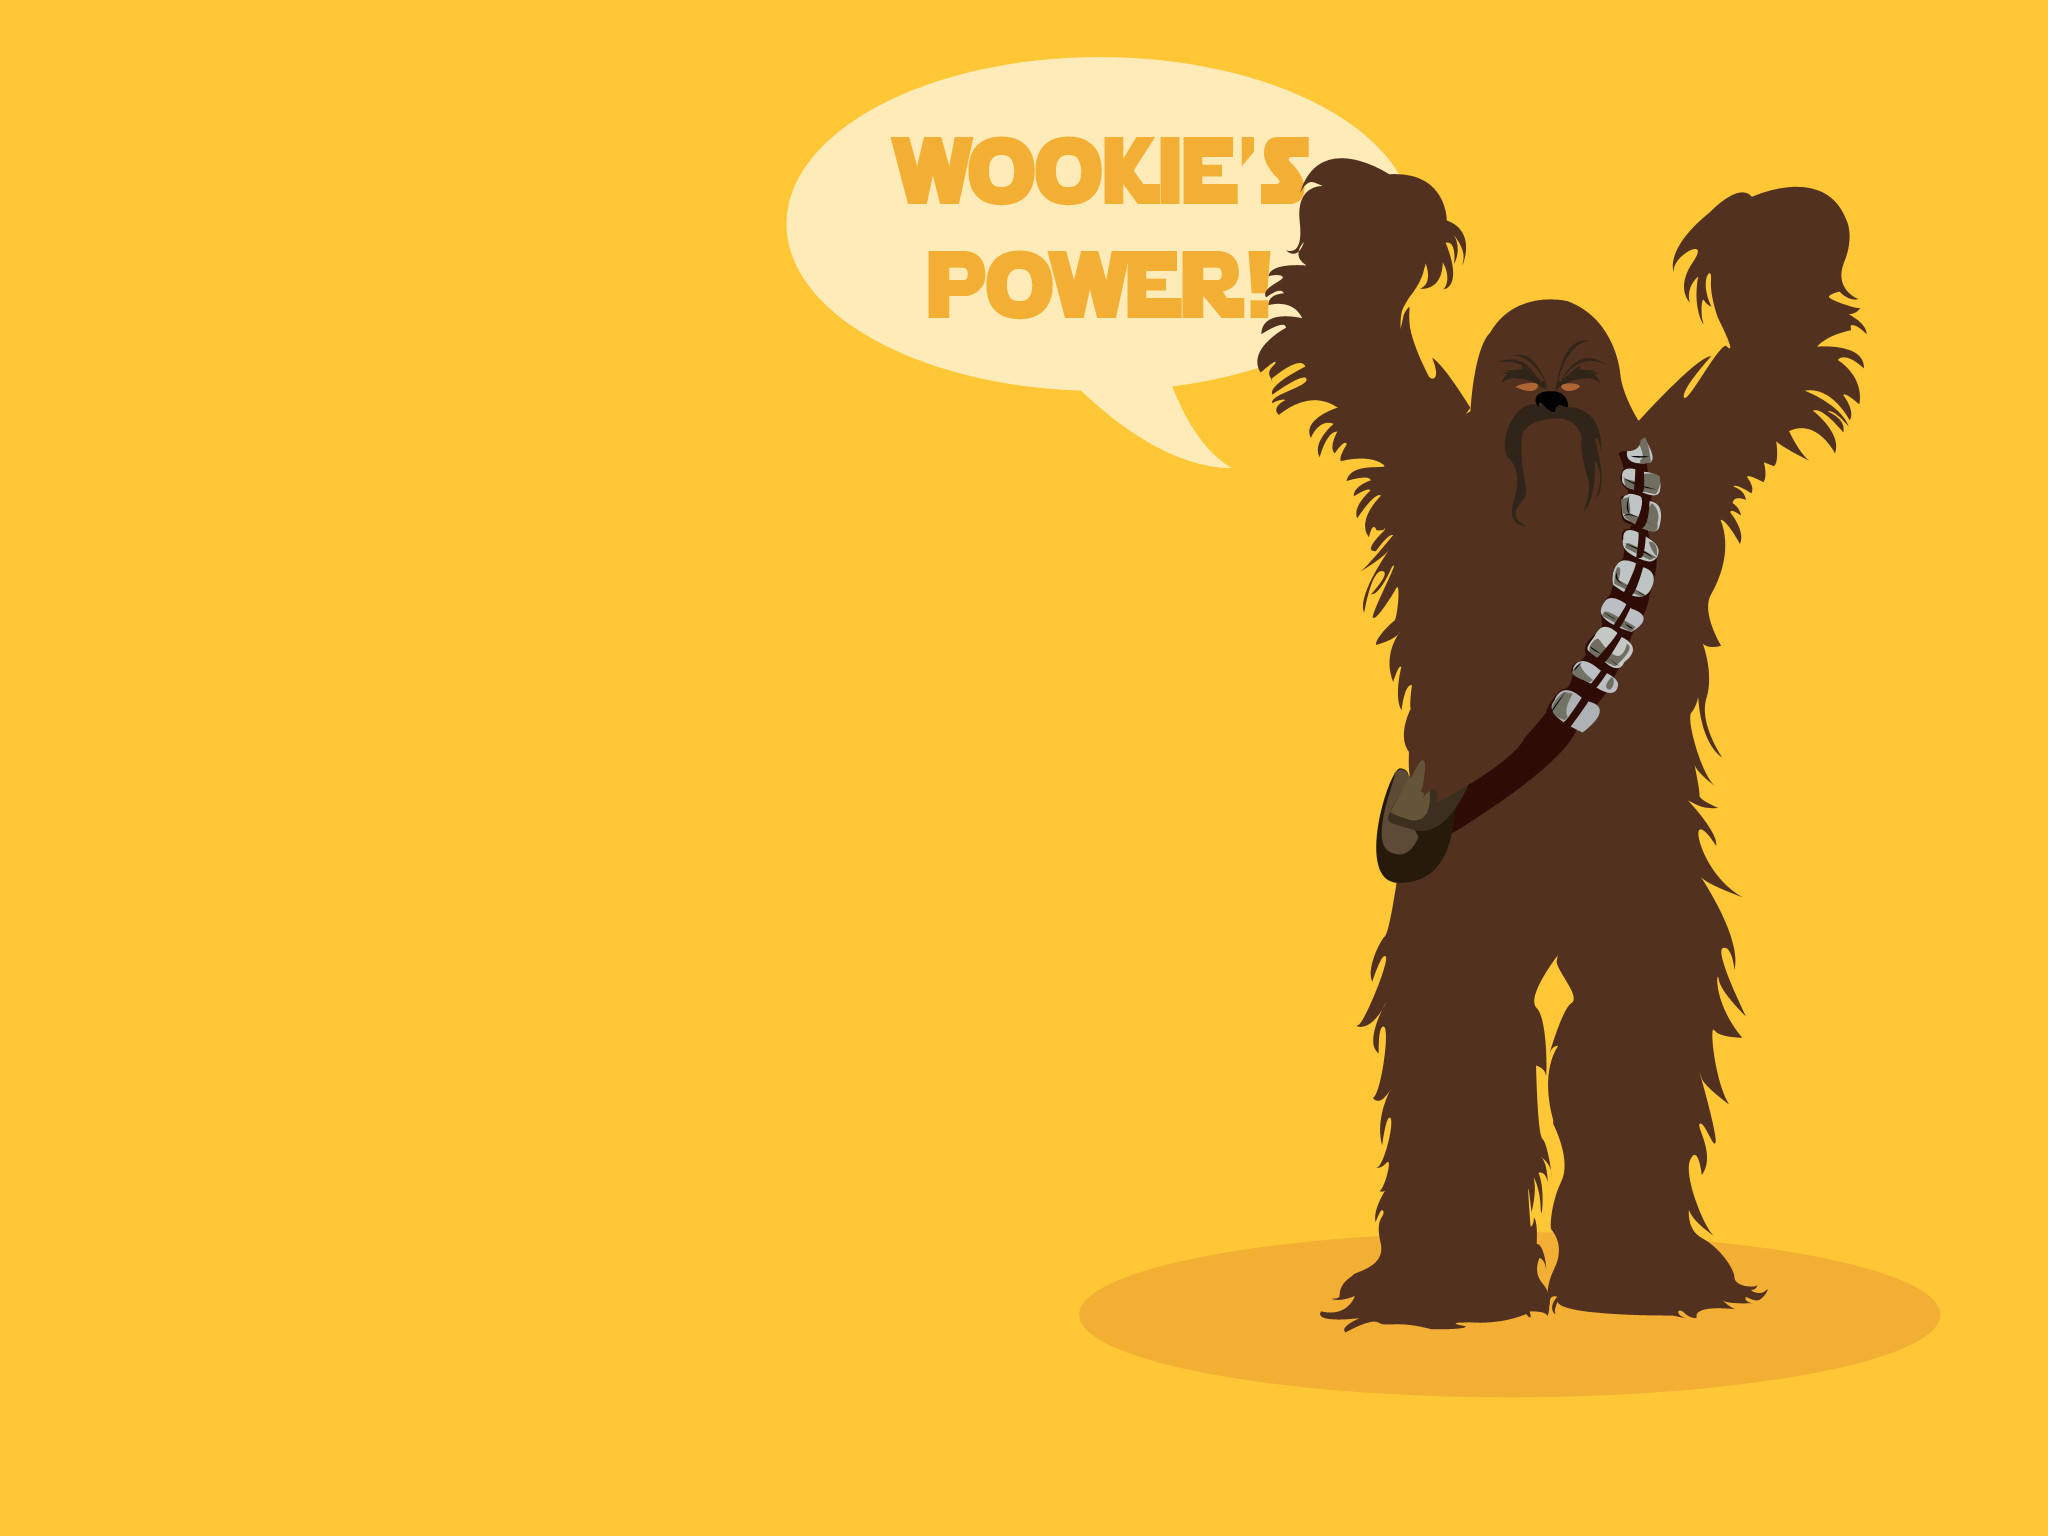 2048x1536 Wookie's POWER Chewbacca by Alakran Wookie's POWER Chewbacca by Alakran